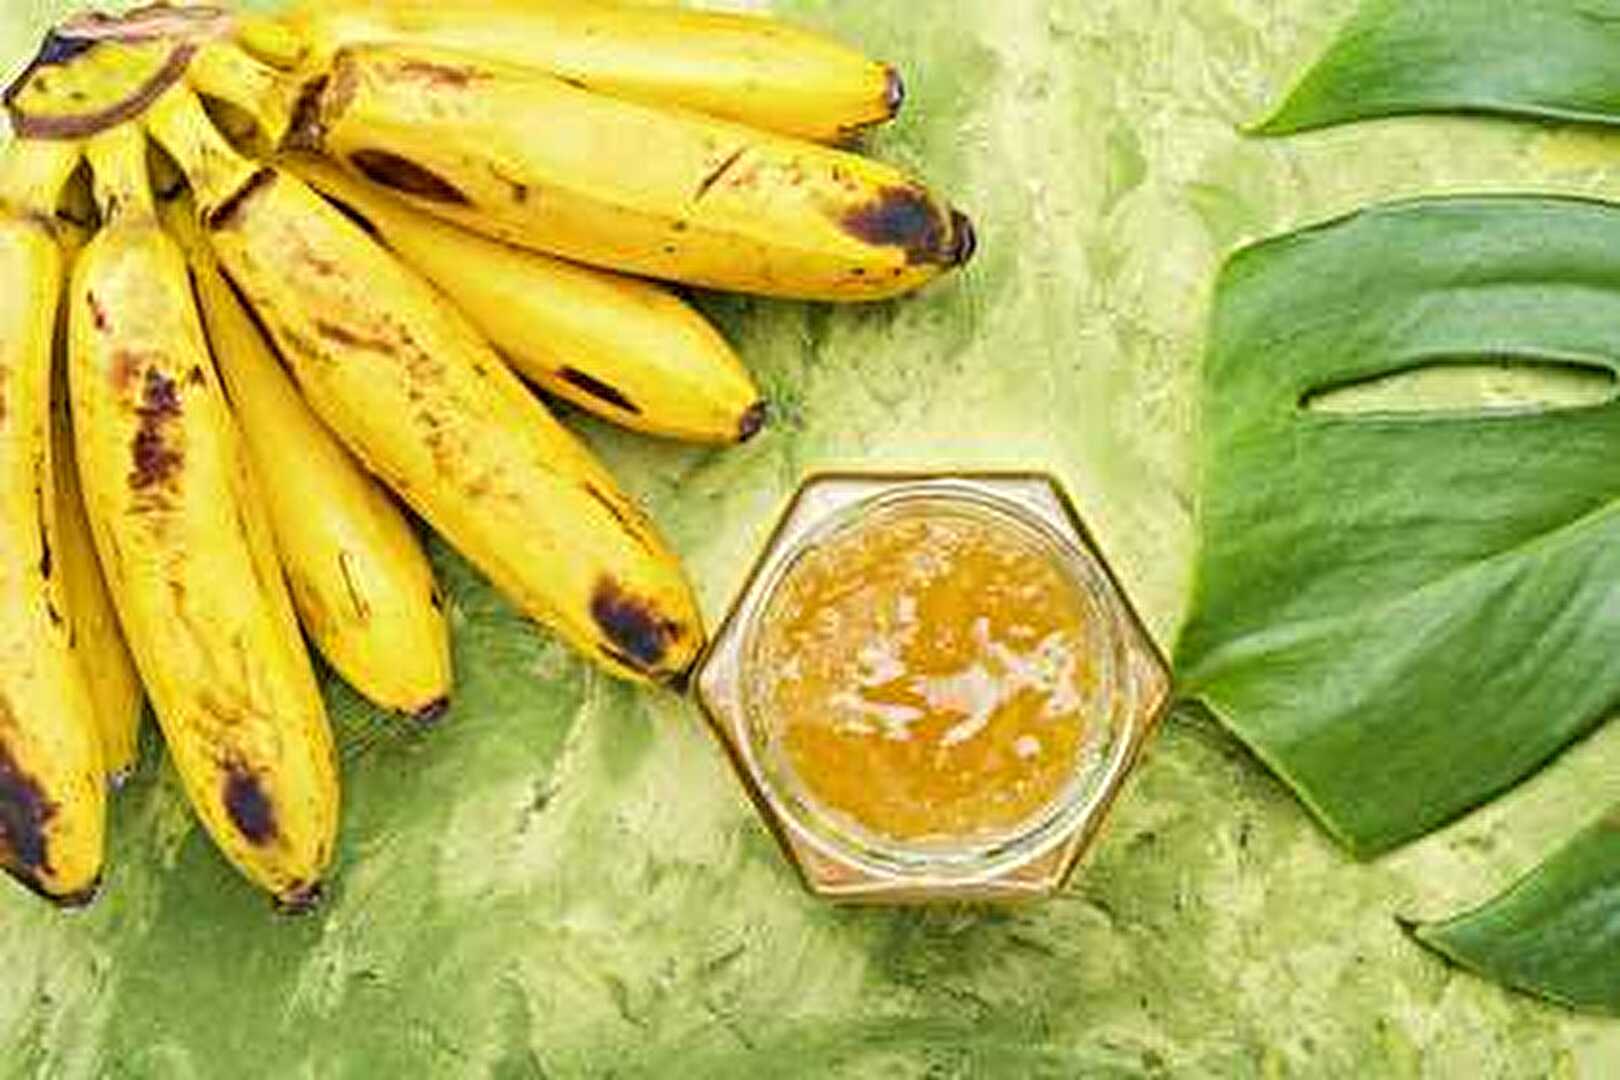 Compote de bananes cuite